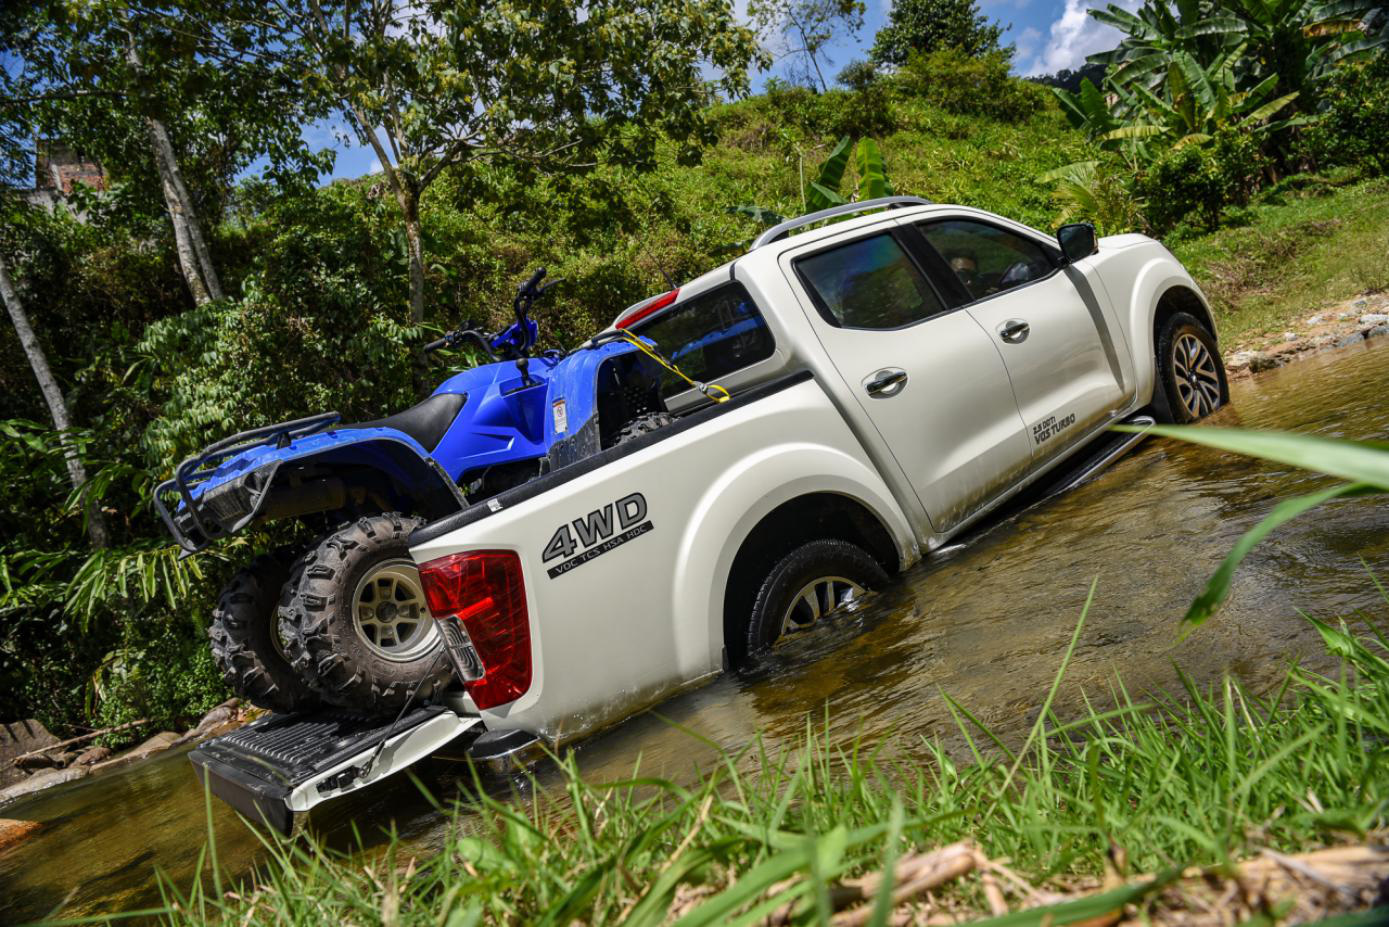 Trải nghiệm bộ ba xe Nissan mới nhất với hành trình “Go Anywhere” tại Malaysia - Ảnh 4.